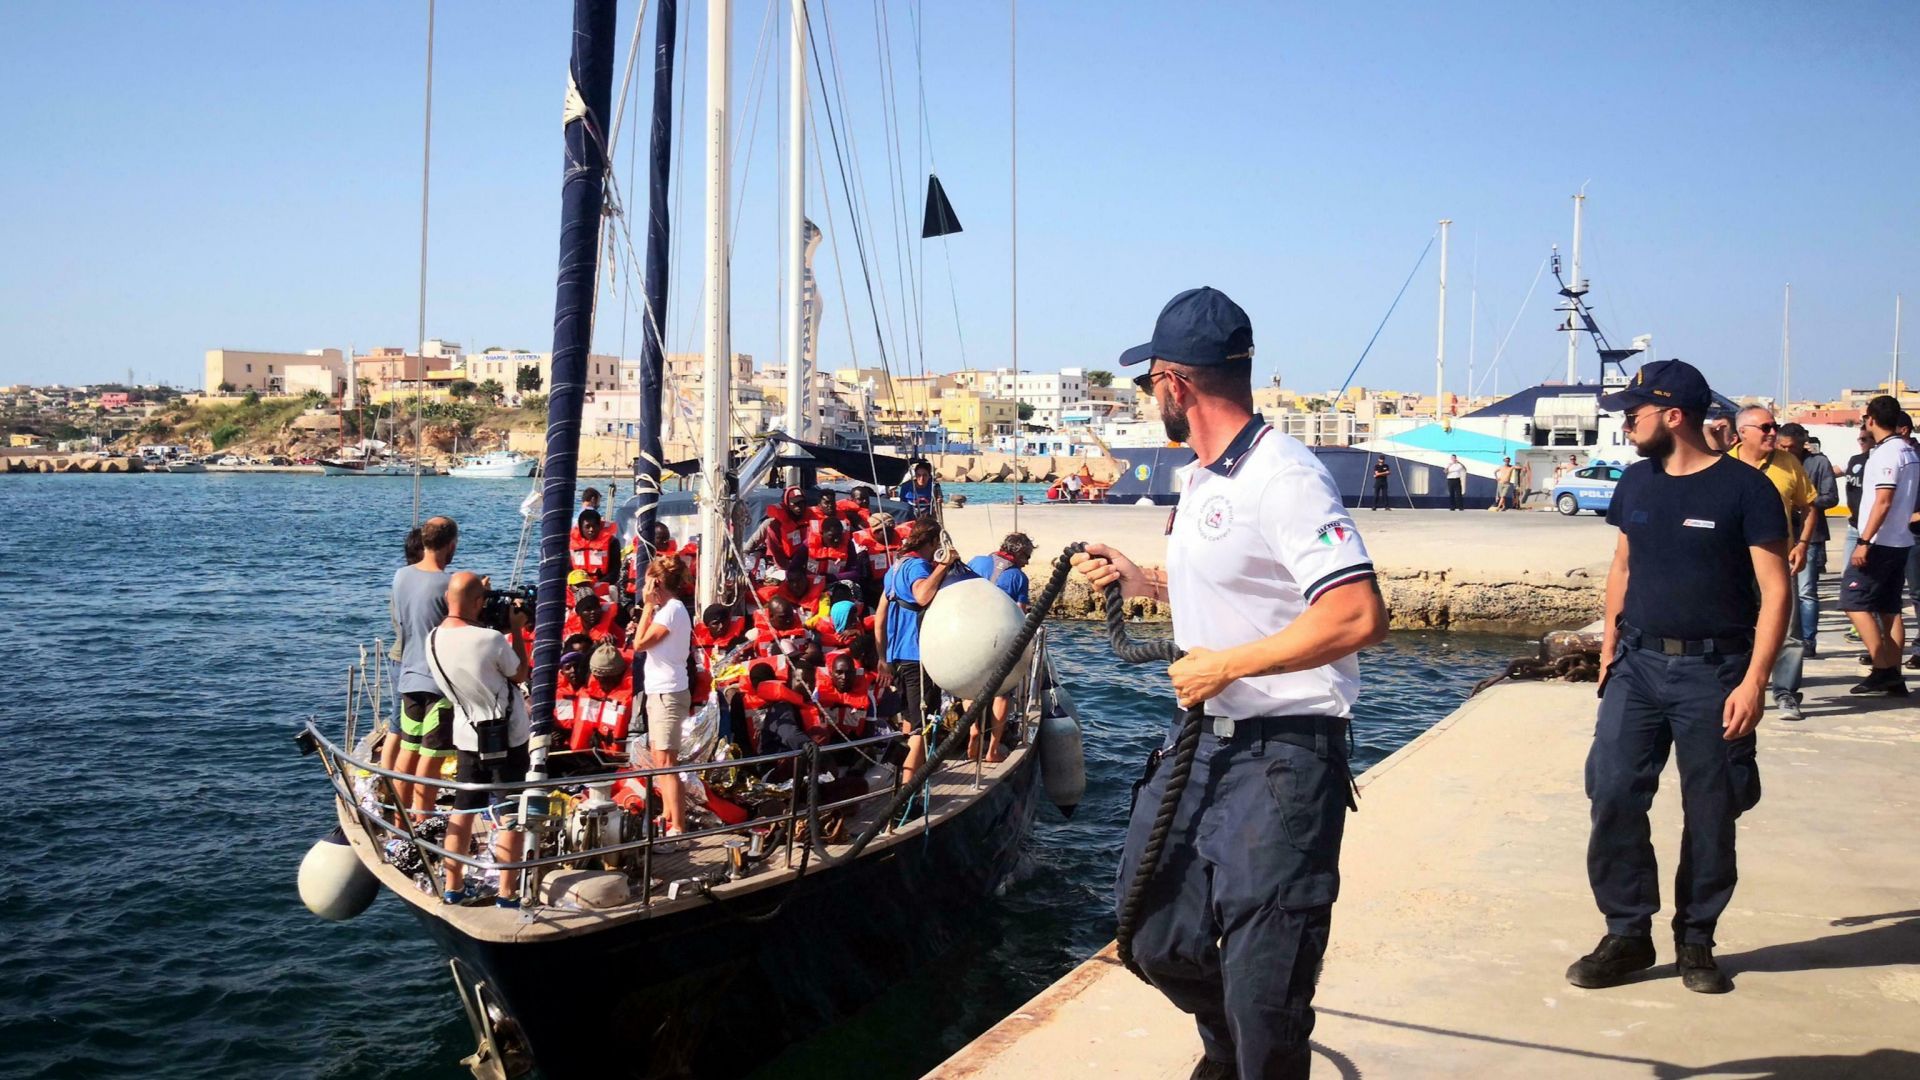 Ново напрежение с кораб с мигранти в Италия Вчера плавателният съд